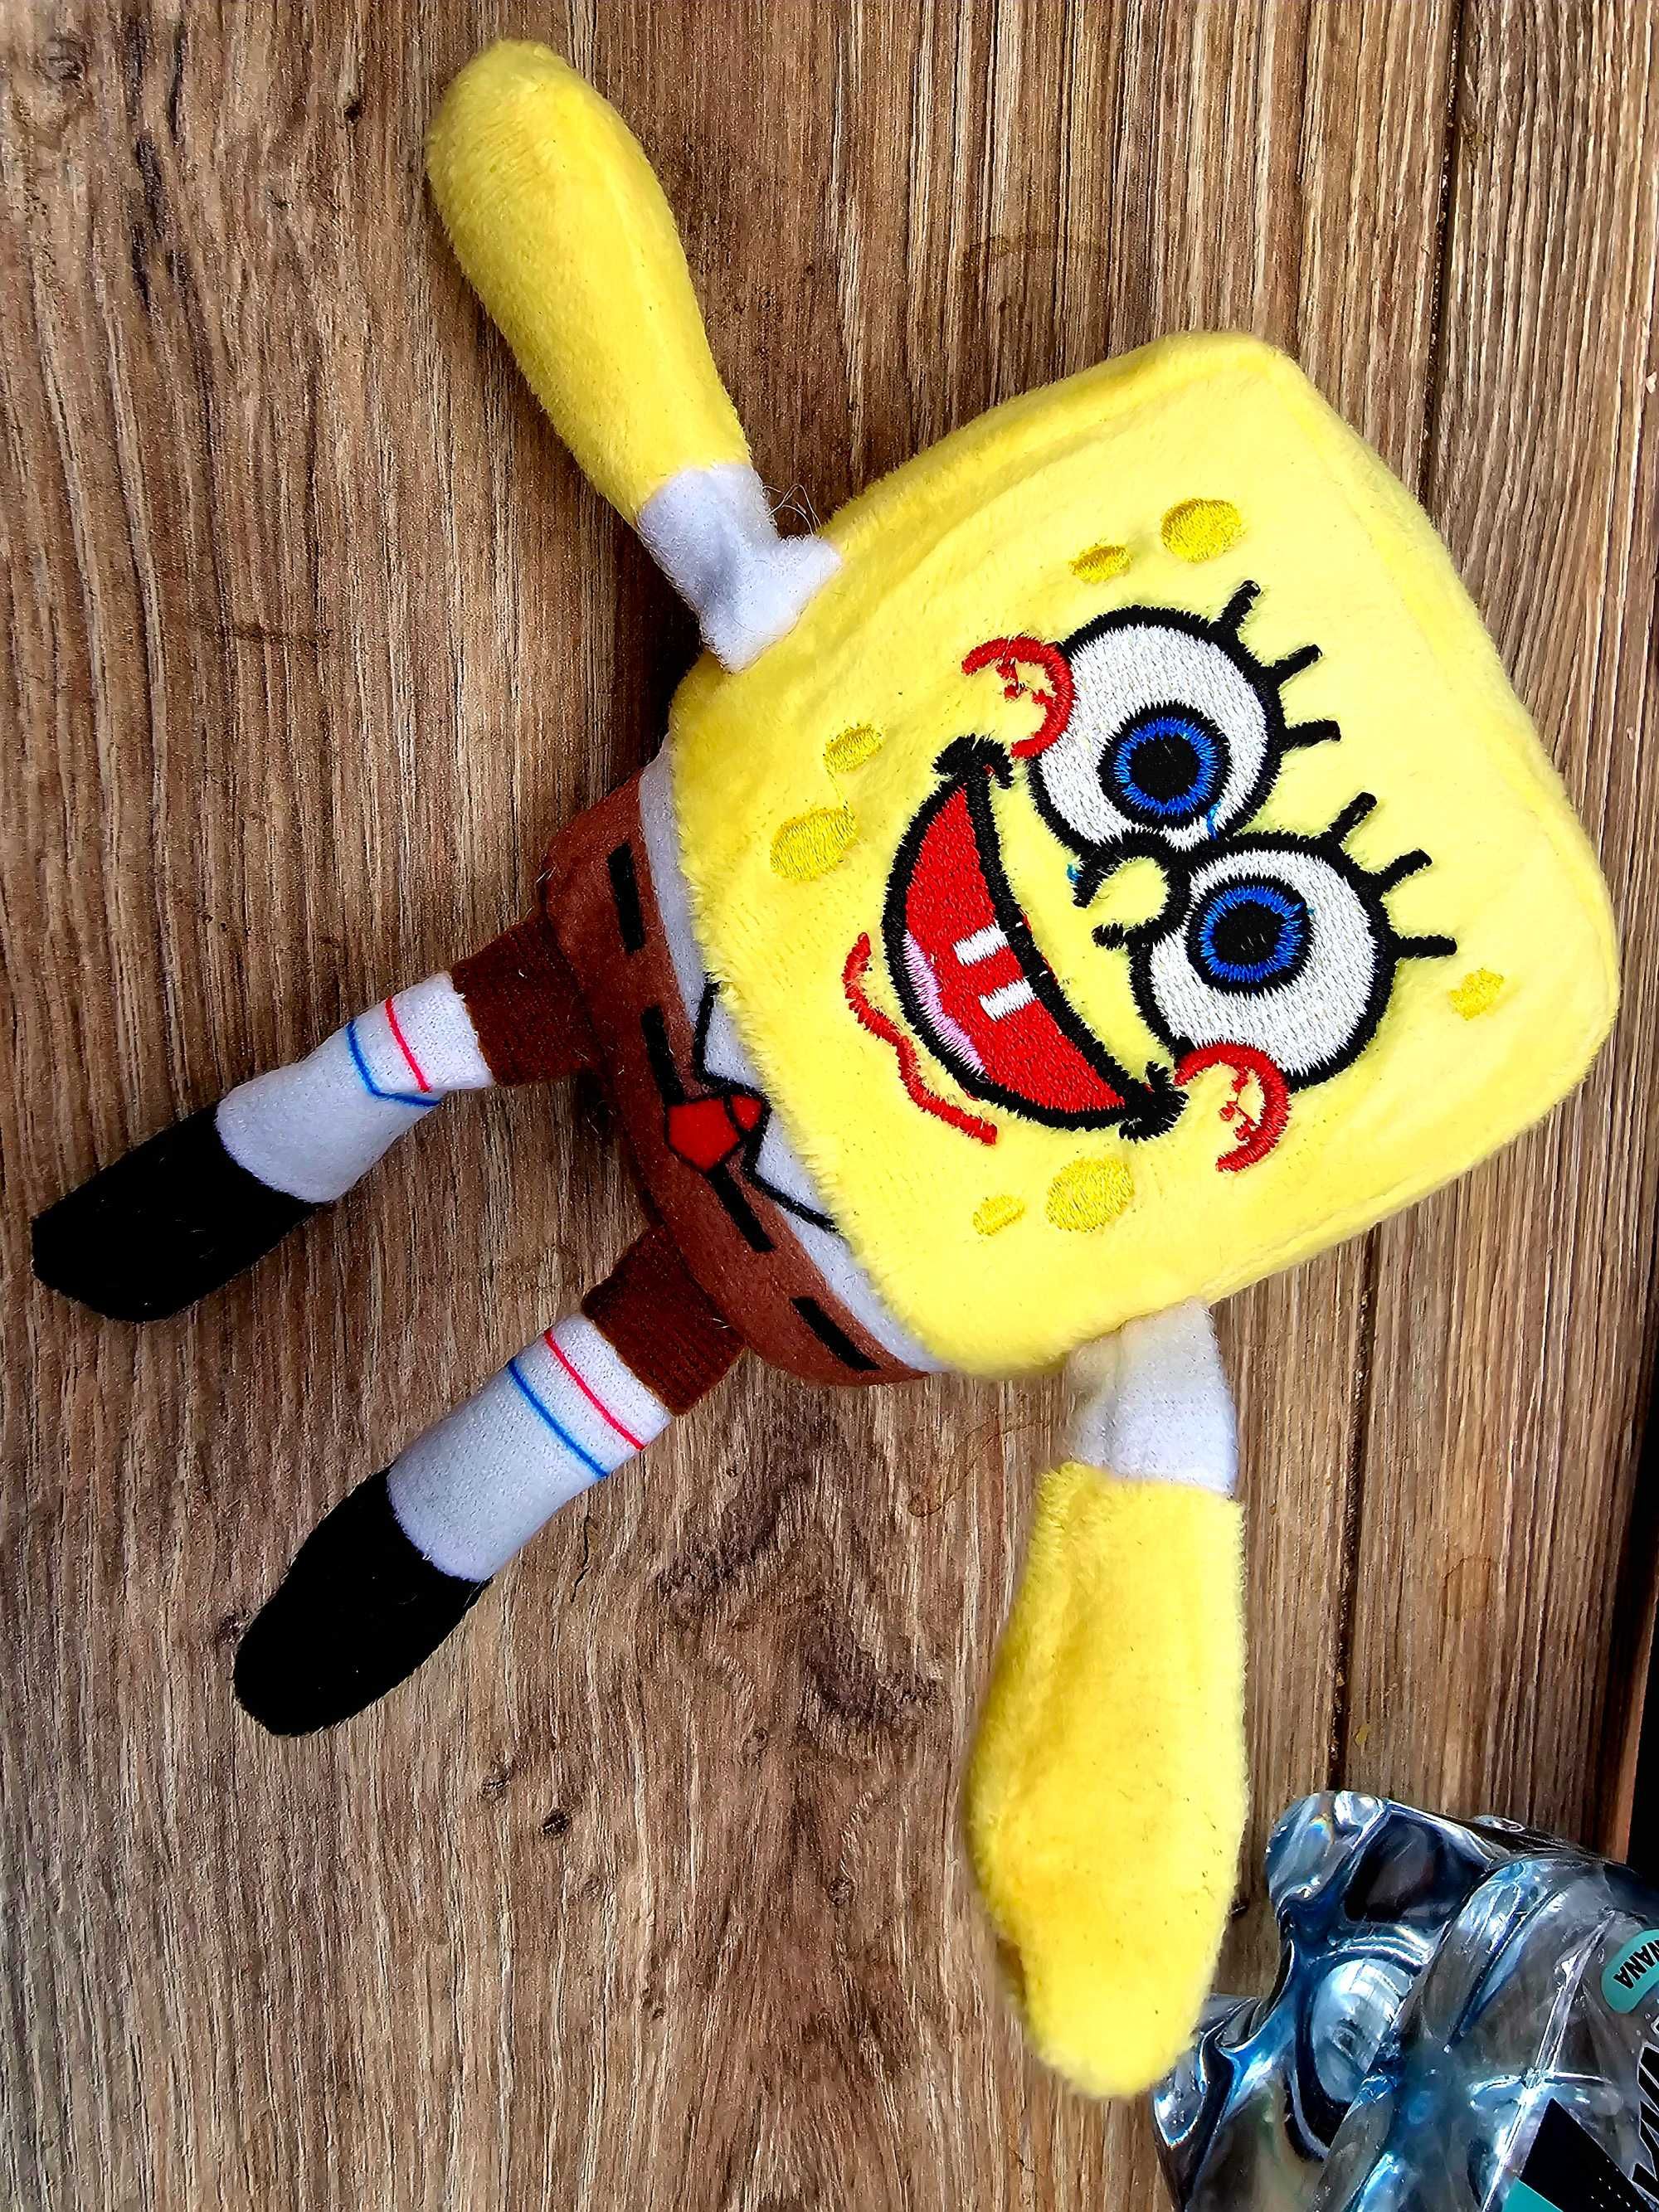 Maskotka brelok pluszowy SpongeBob dla dziecka